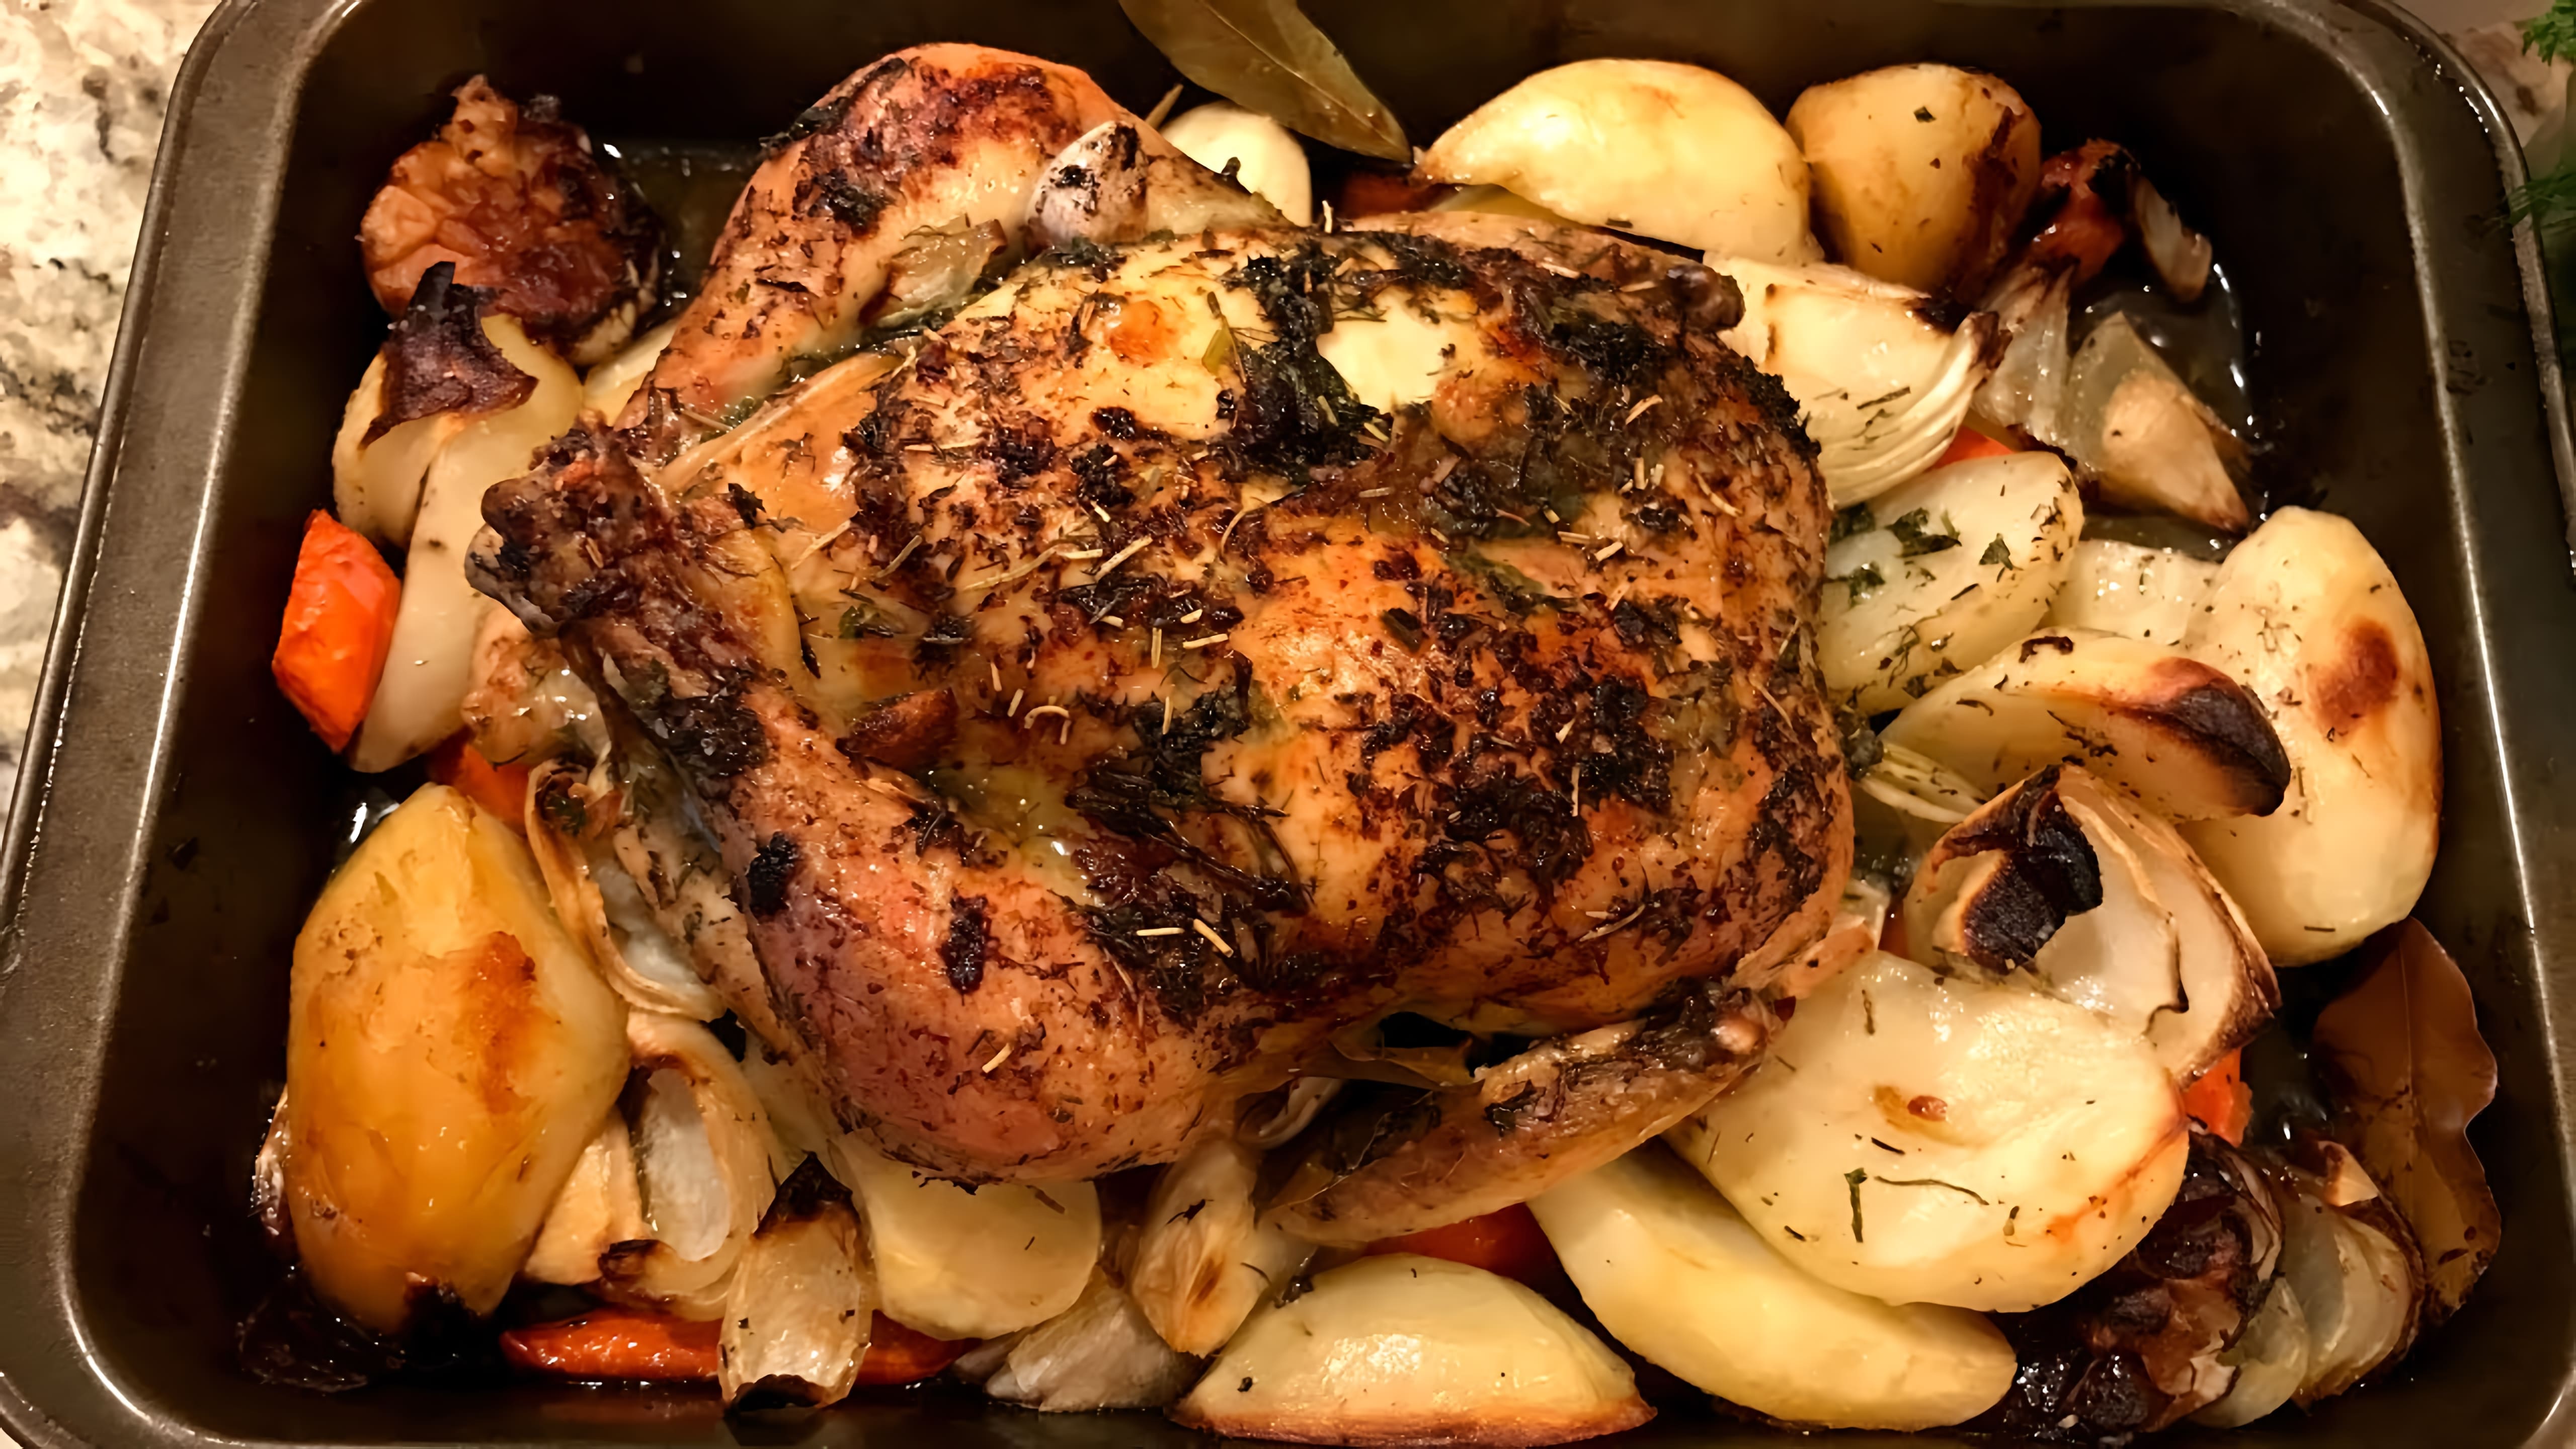 Видео: Курица запеченная в духовке с хрустящей корочкой. Овощи в духовке. #ИванКас (Ivan Kas)